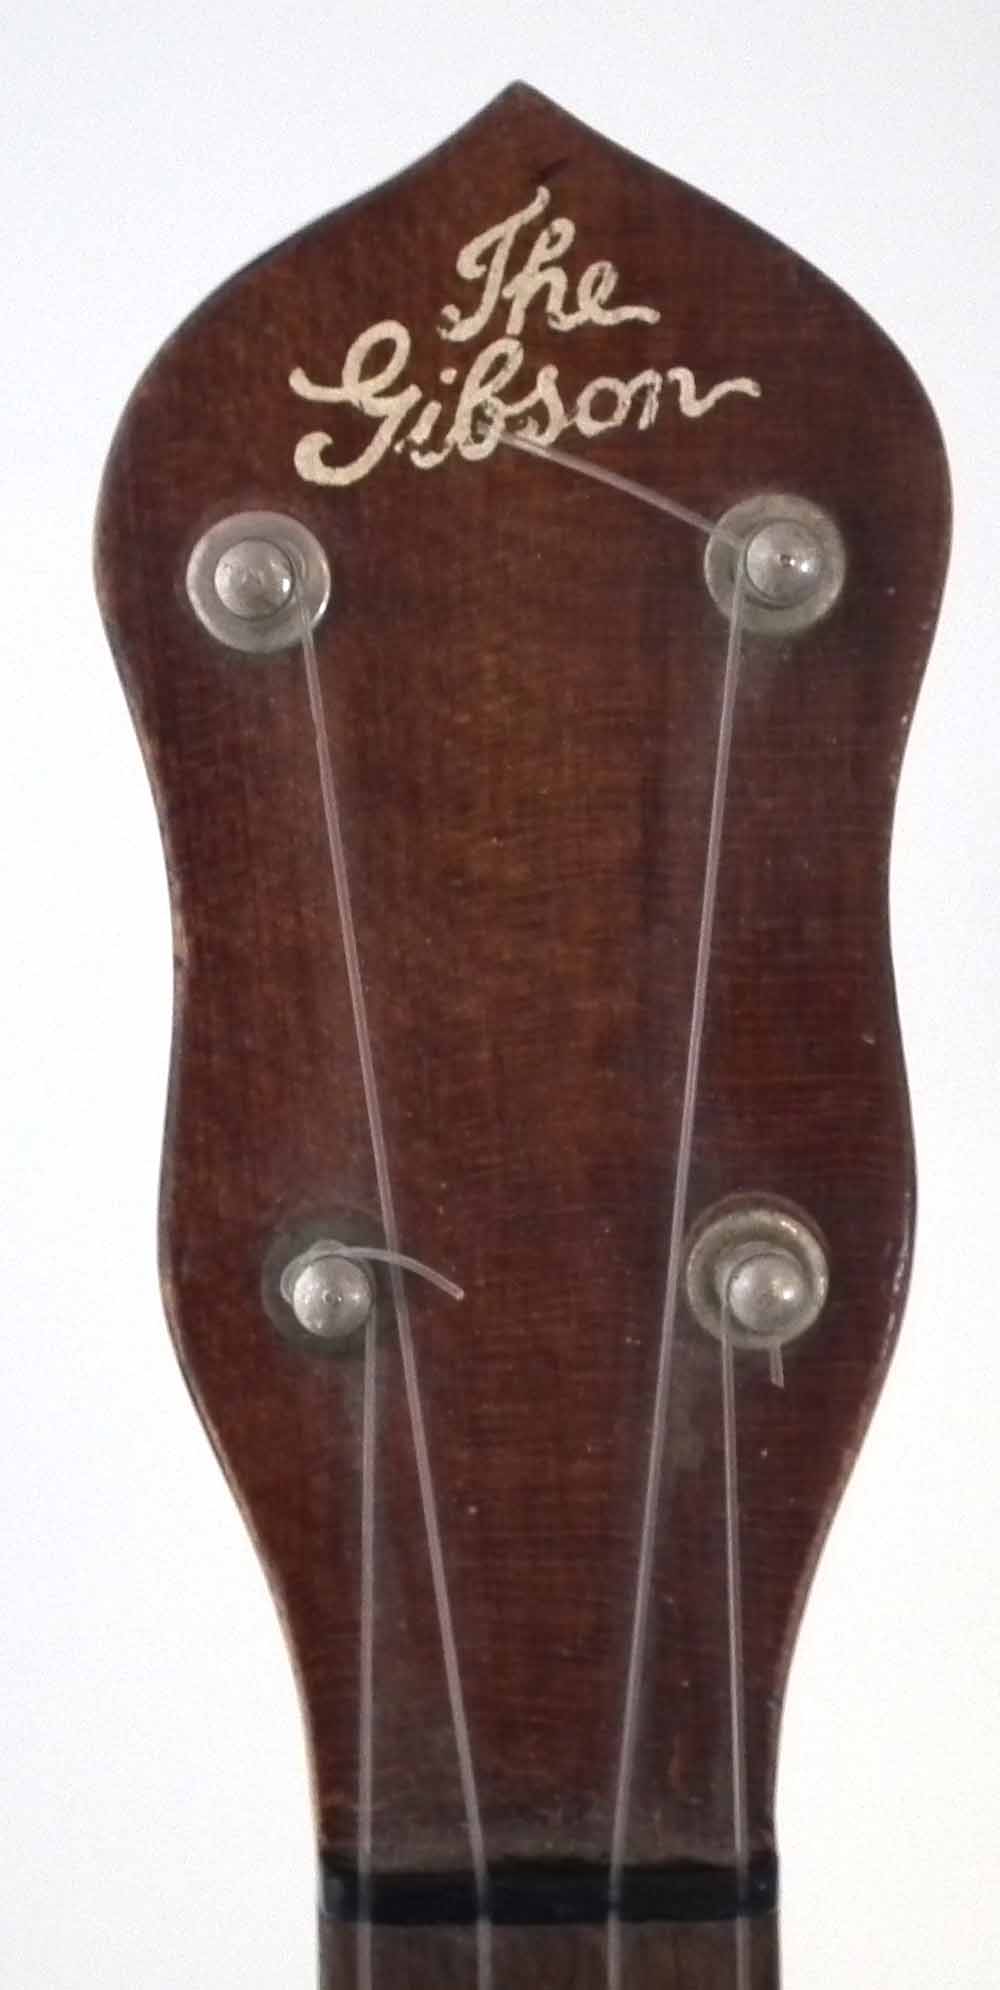 Gibson UB2 Banjolele or Ukulele Banjo with fourteen fret neck, 55cm overall length - Image 2 of 9